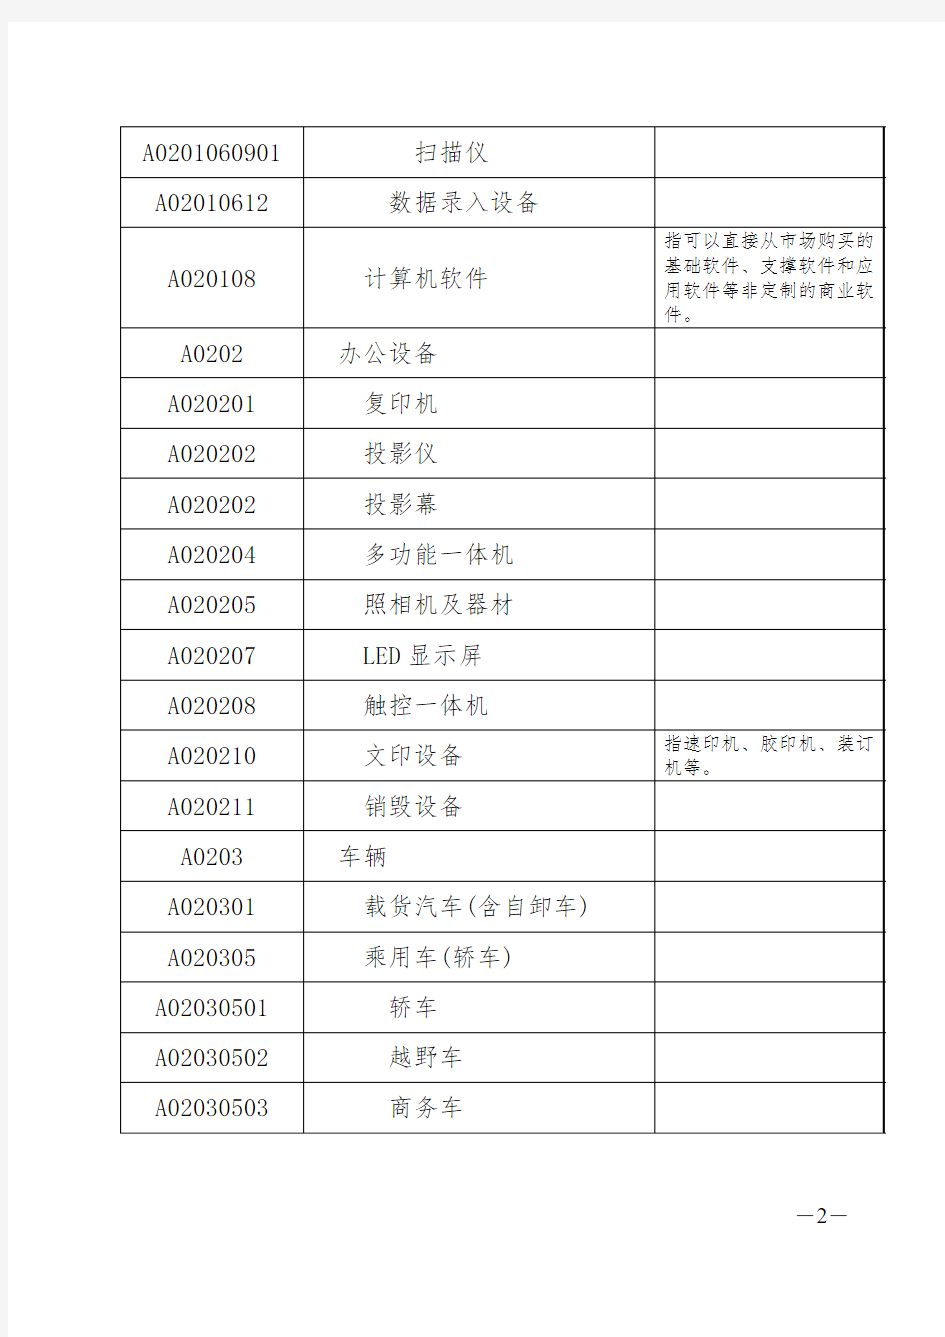 河北省政府采购集中采购目录和限额标准  2013年11月1日执行解读